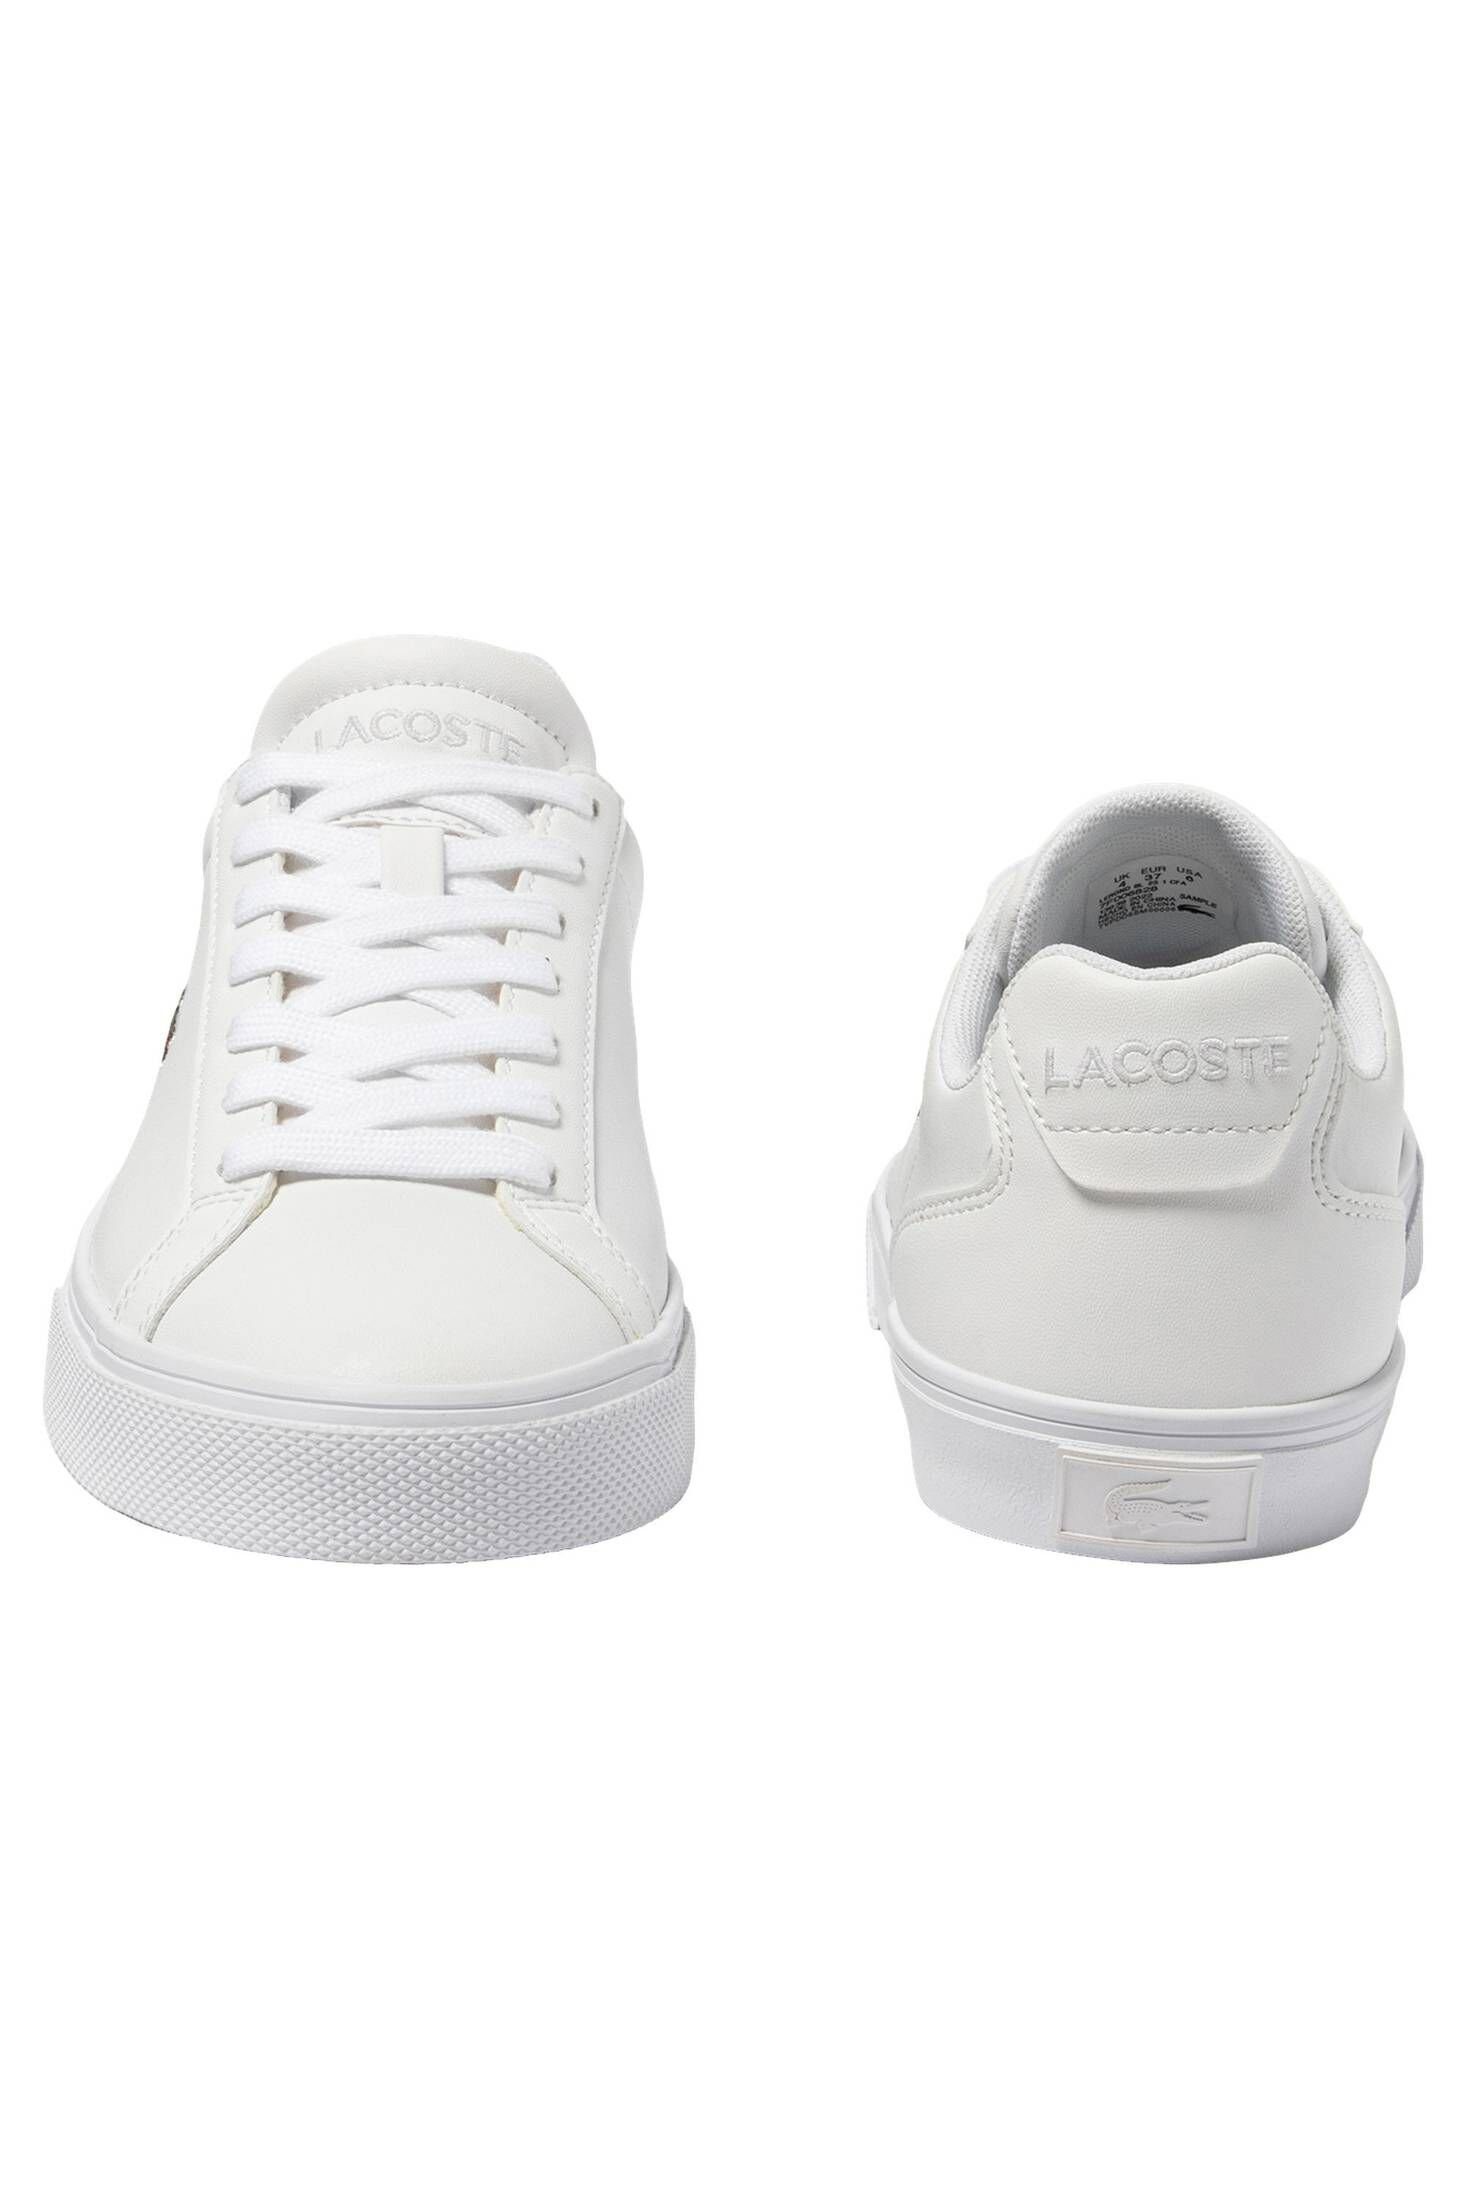 BASELINE LEROND Lacoste Sneaker (100) Damen LEATHER Sneaker weiß PRO